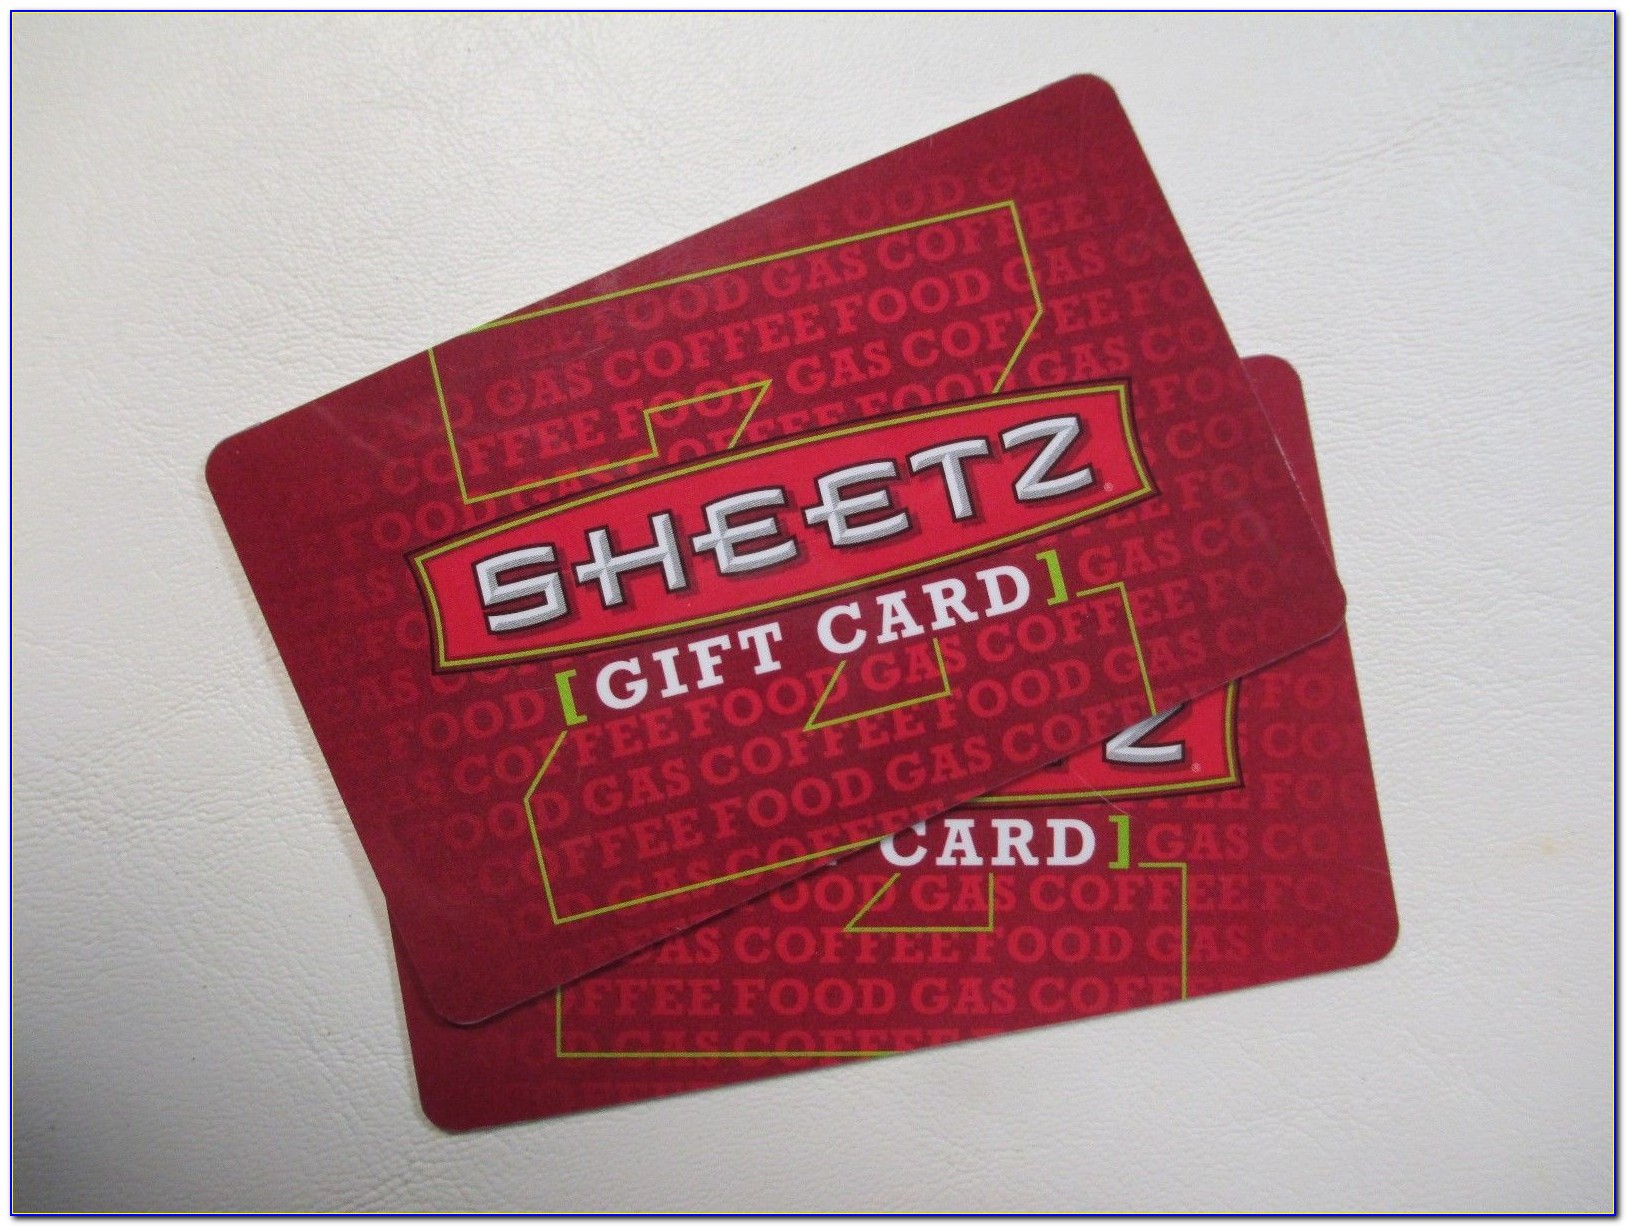 Sheetz Business Fuel Card